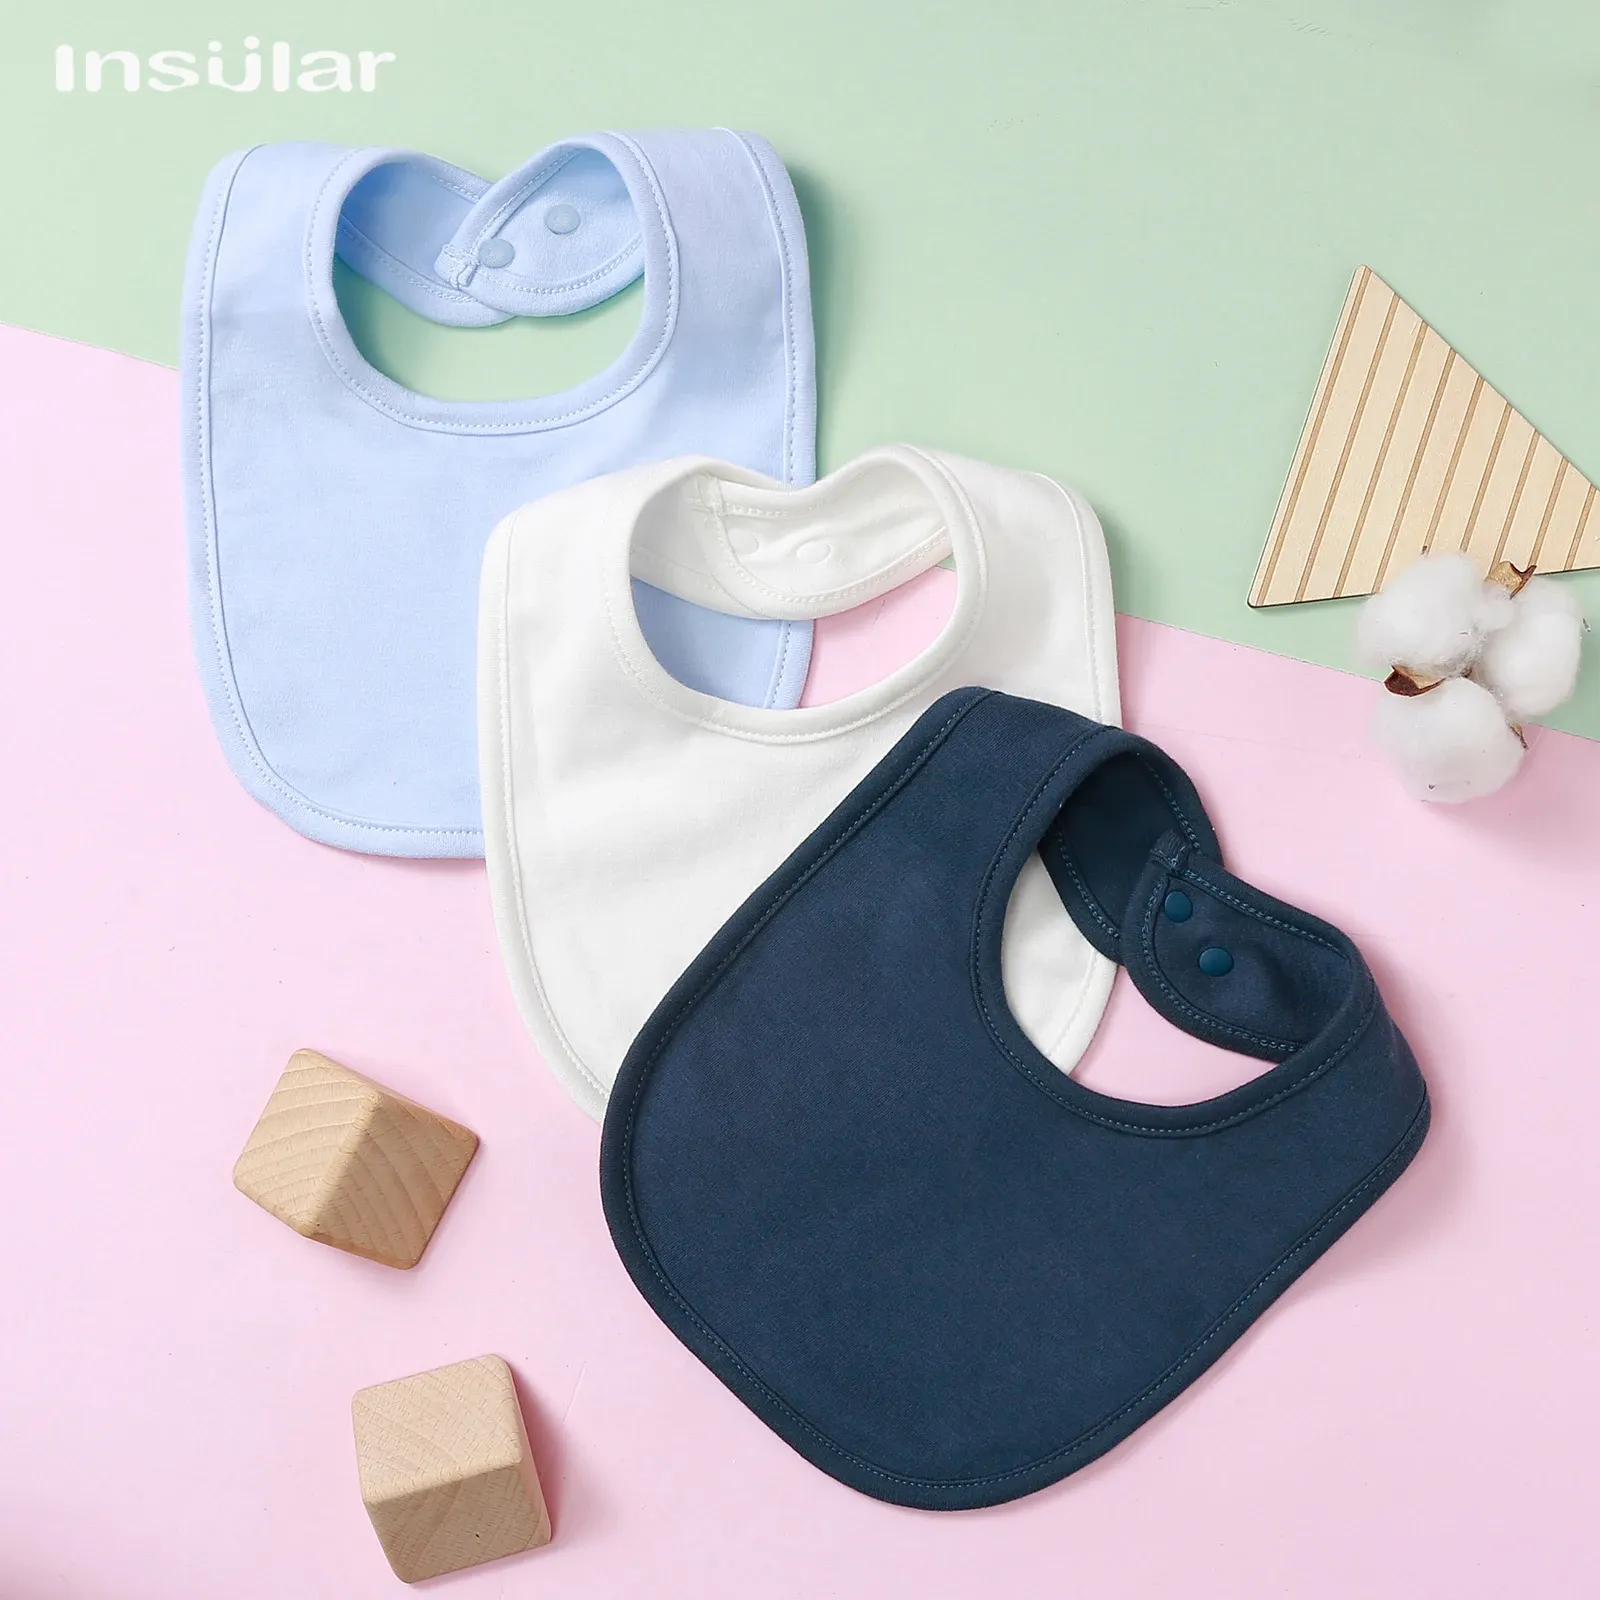 Accessoires Insular Baby Bib Soft Cotton Baby Biabs Cute sjaal Comfortabel kwijlen en kinderziektes